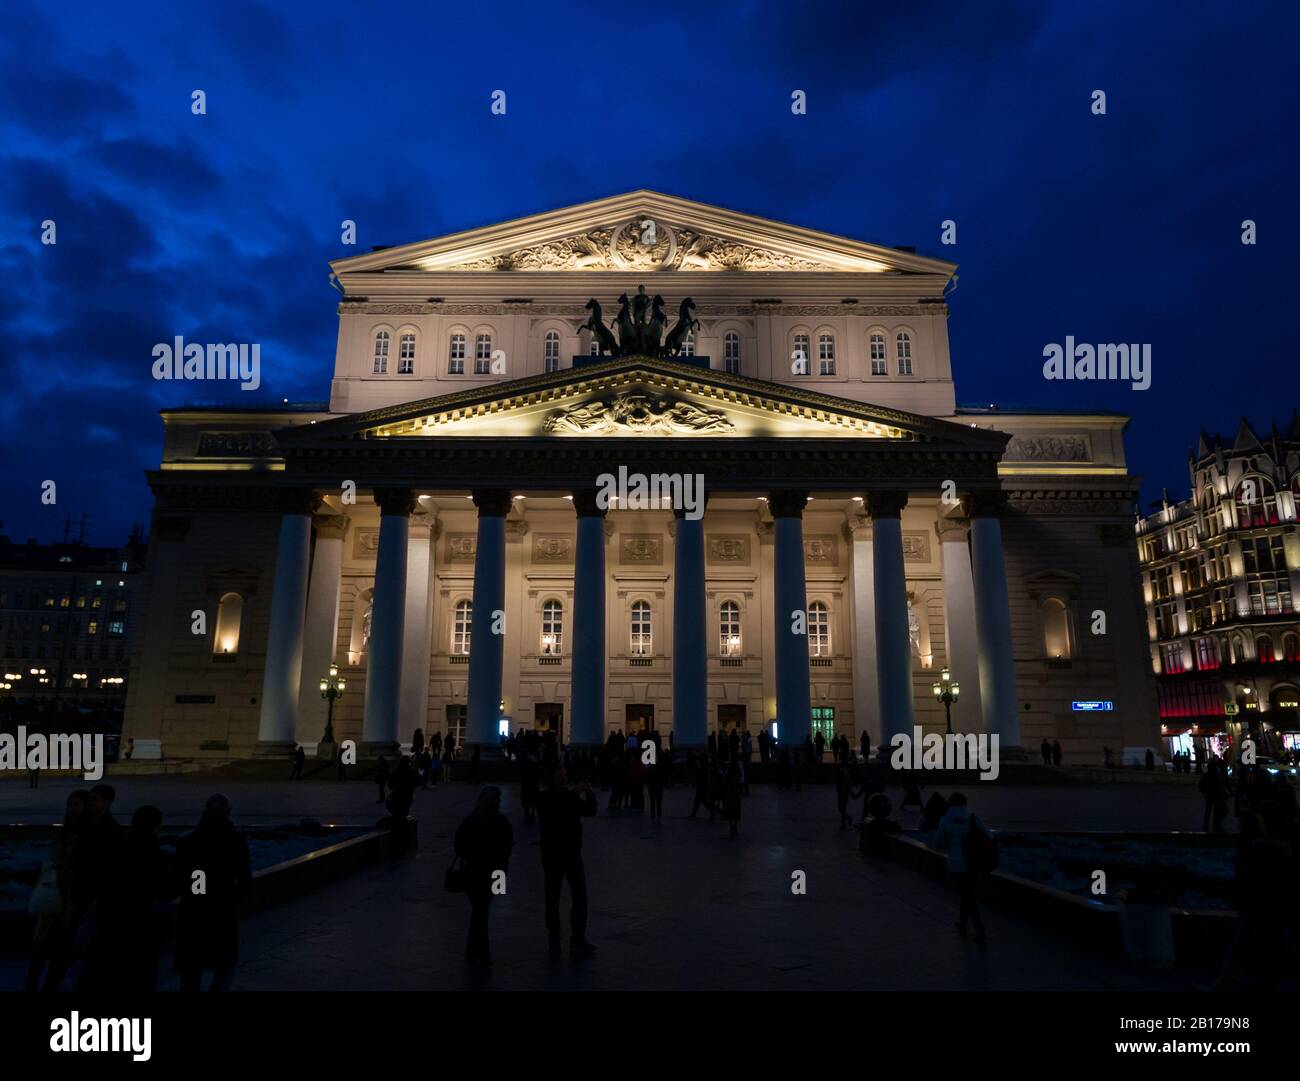 Teatro Bolshoi illuminato di notte con persone in piazza, Piazza del Teatro, Mosca, Federazione russa Foto Stock